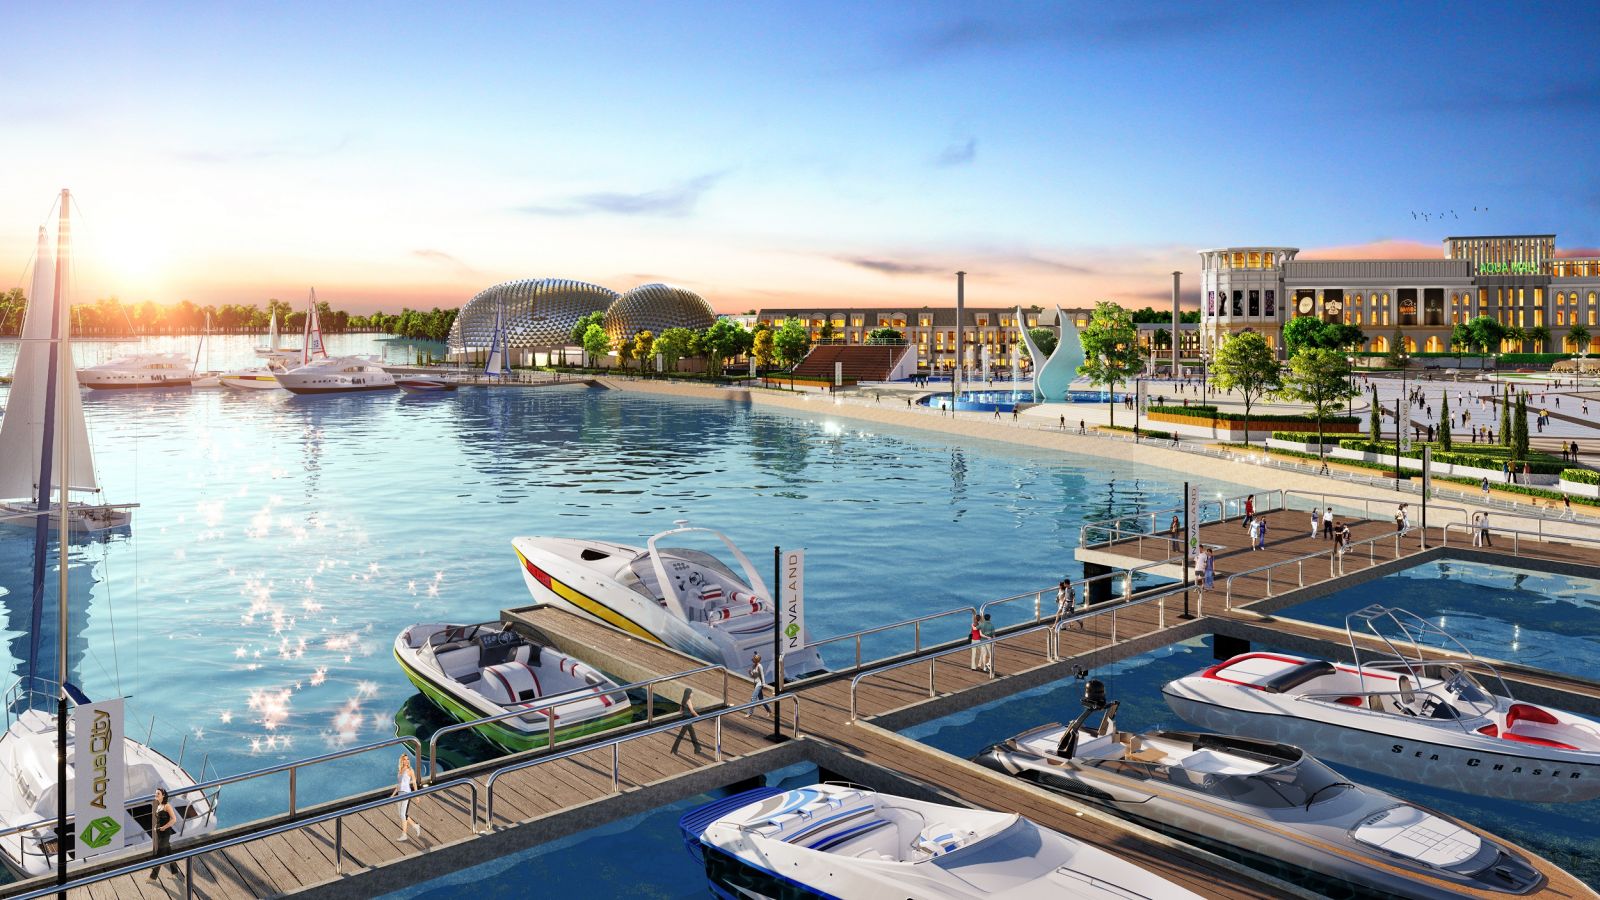 Tổ hợp bến du thuyền Aqua Marina sầm uất và đẳng cấp tại Aqua City dự kiến ra mắt vào cuối tháng 7 này